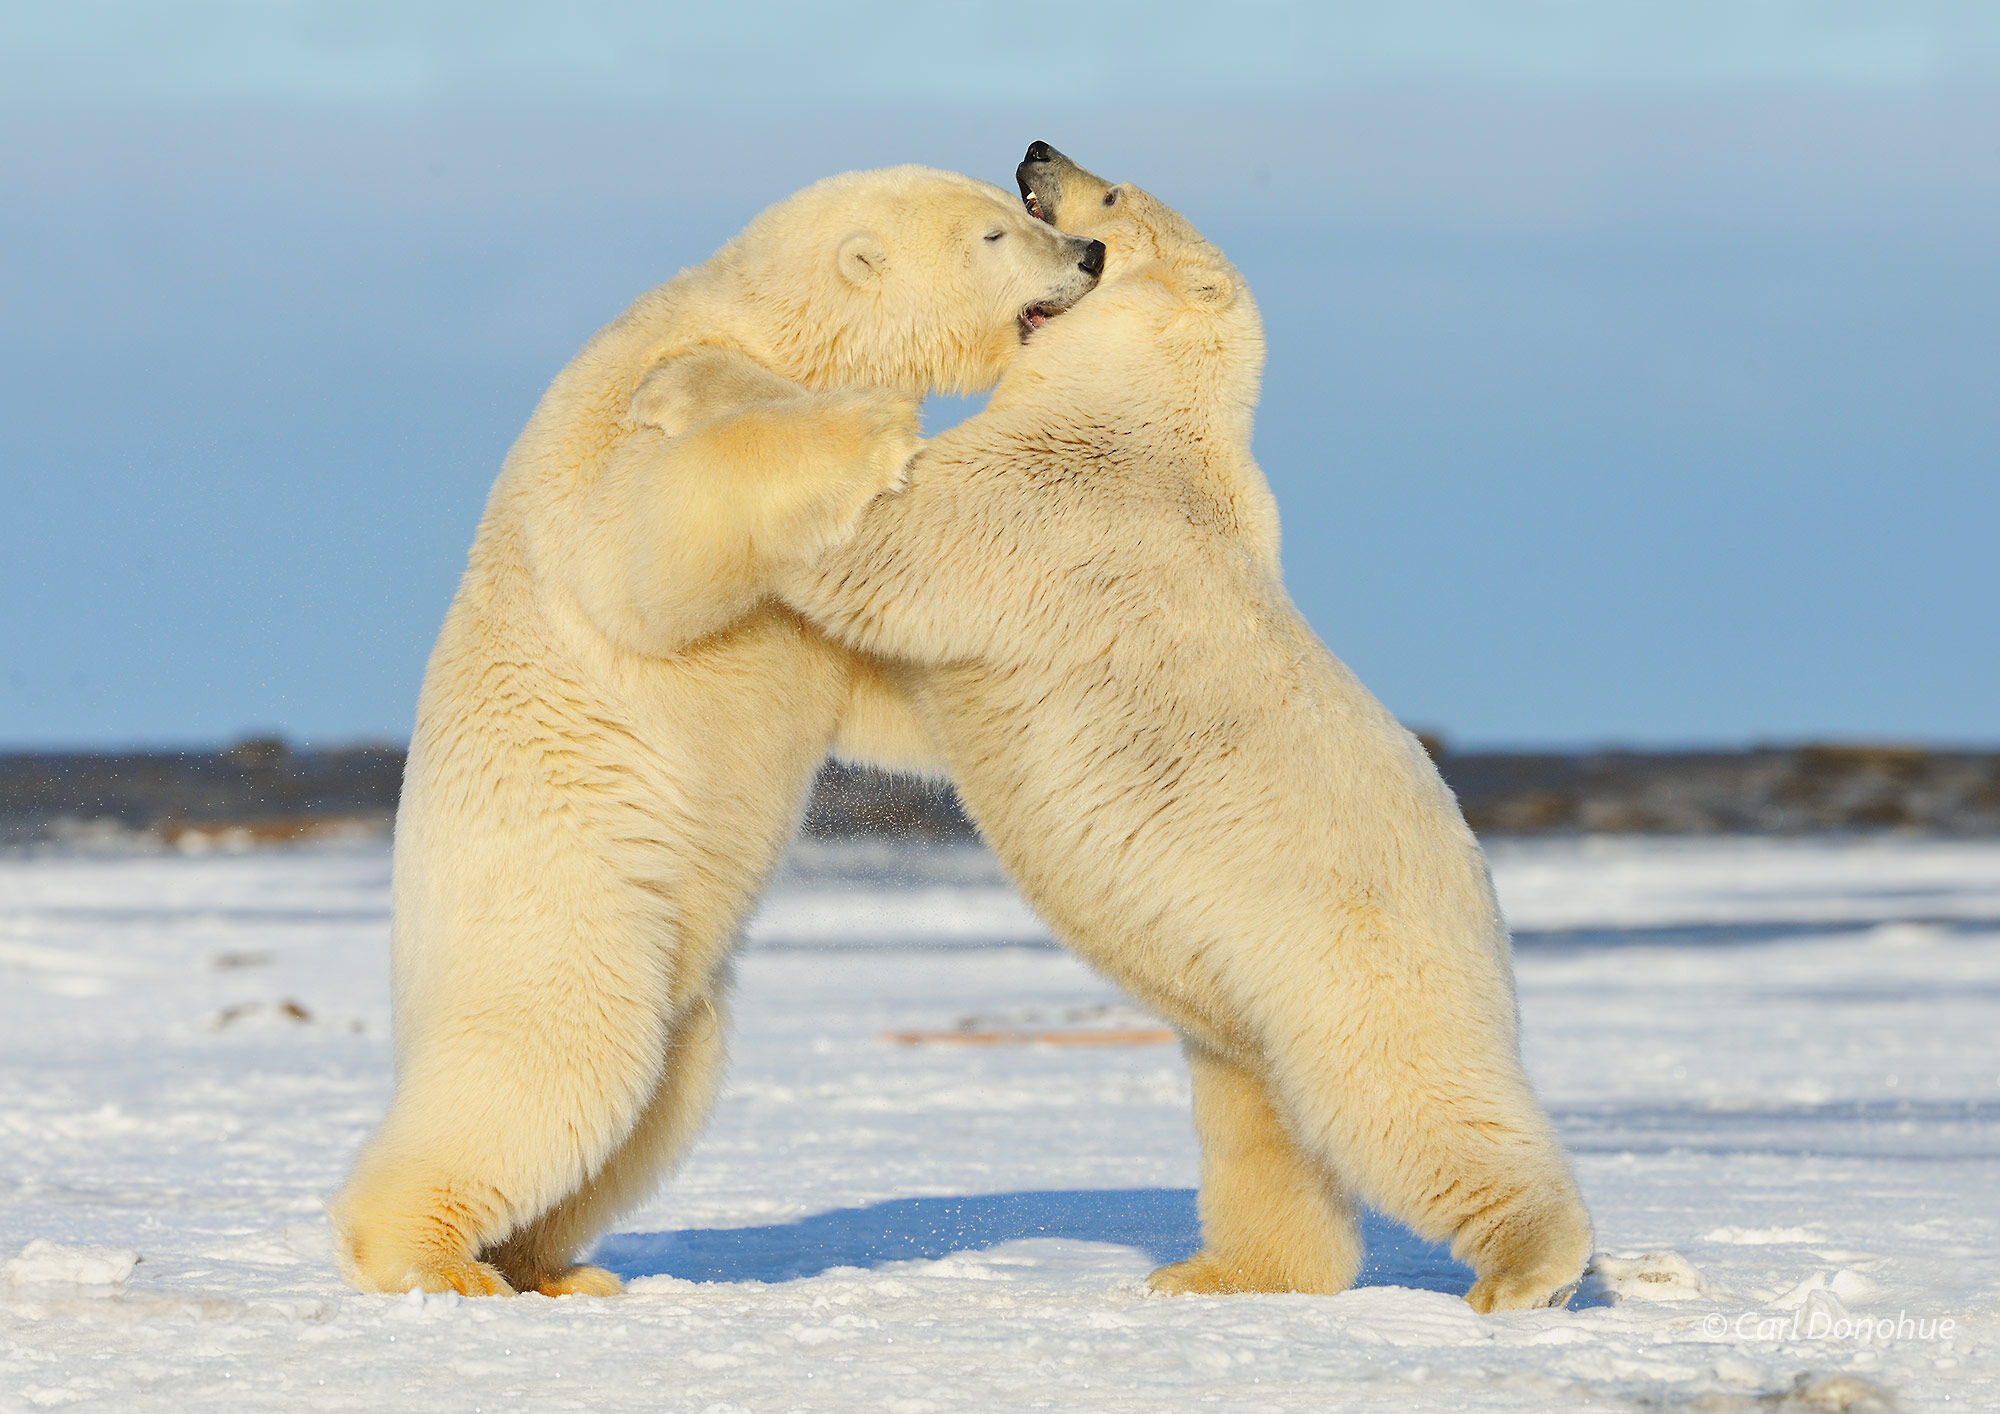 Polar Bears wrestling and playing, ANWR, Alaska.